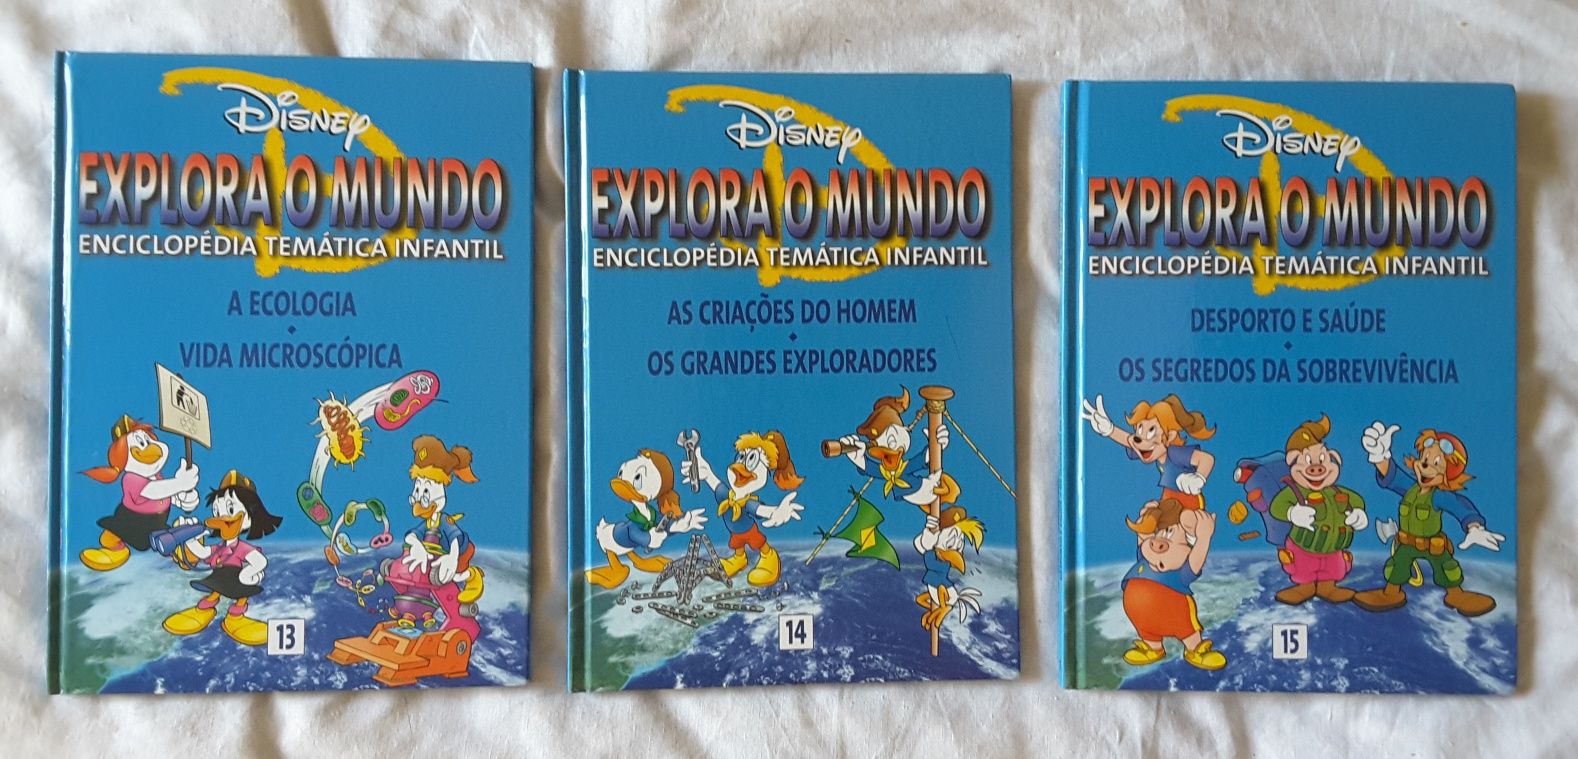 Explora o Mundo - Enciclopédia temática infantil - escoteiros l0Disney